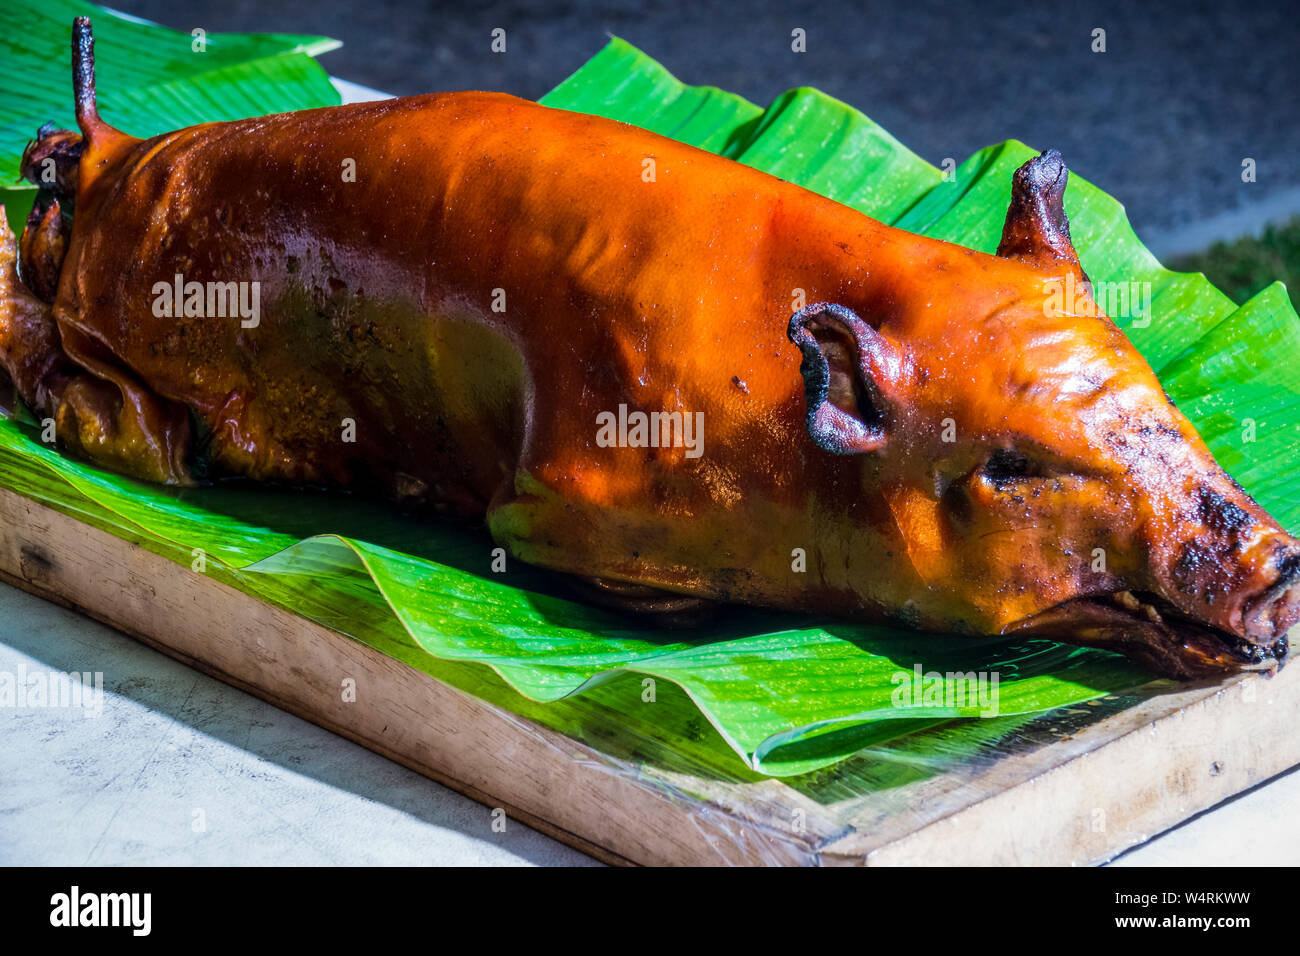 Ready to eat roasted suckling pig, Ubud, Bali, Indonesia Stock Photo